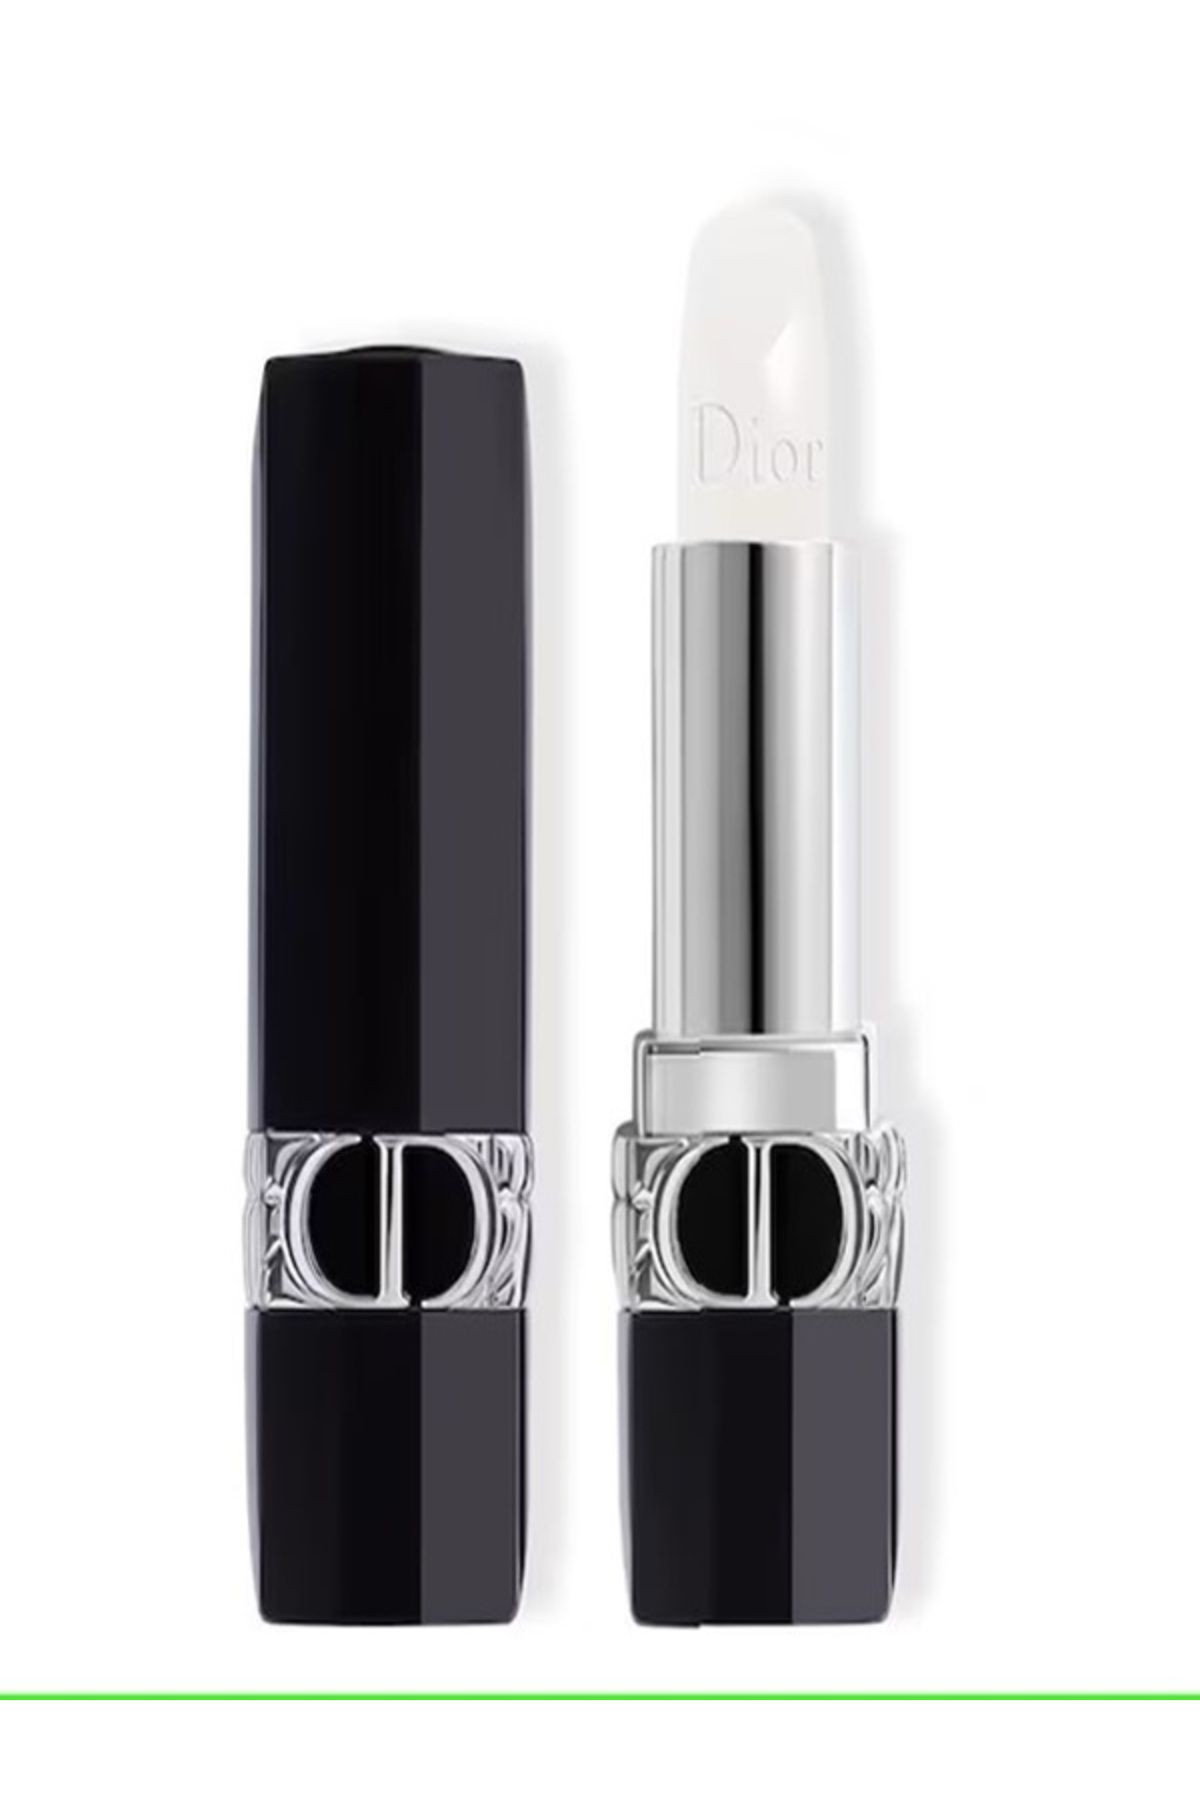 Dior Rouge Dior Floral Care Lip Balm - 24 Saate Kadar Nemlendirme Etkili Pürüzsüzleştirici Ruj